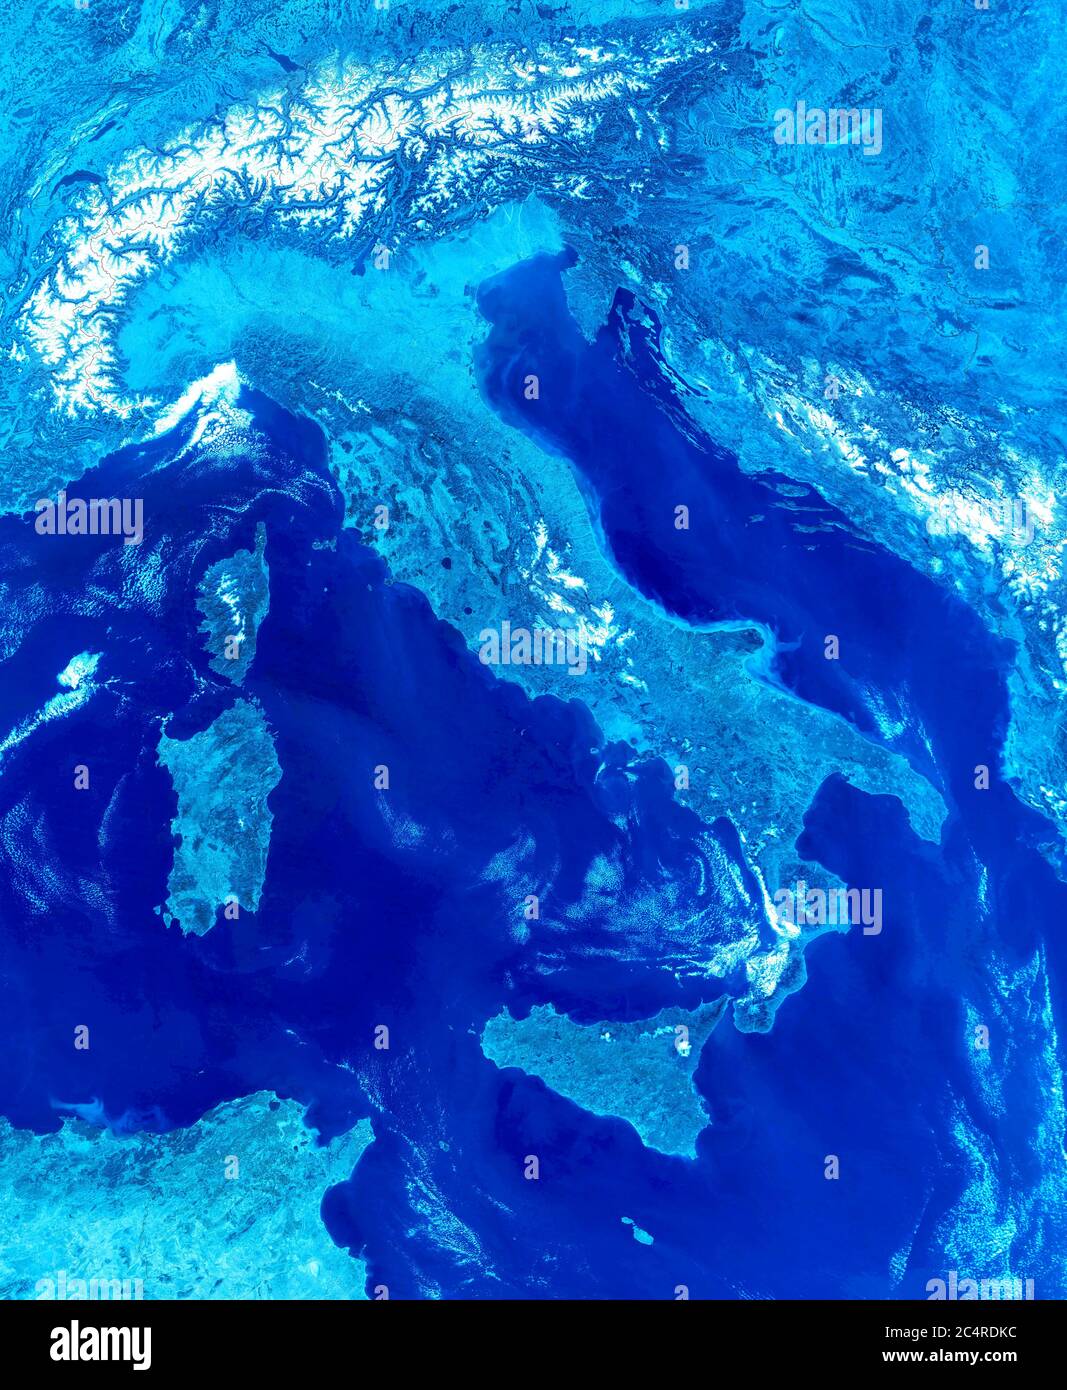 Vista satellitare dell'Italia, dettaglio della mappa topografica europea. Foto ritoccata Terra dallo spazio. Immagine creativa di terreno congelato, superficie blu fredda. El Foto Stock